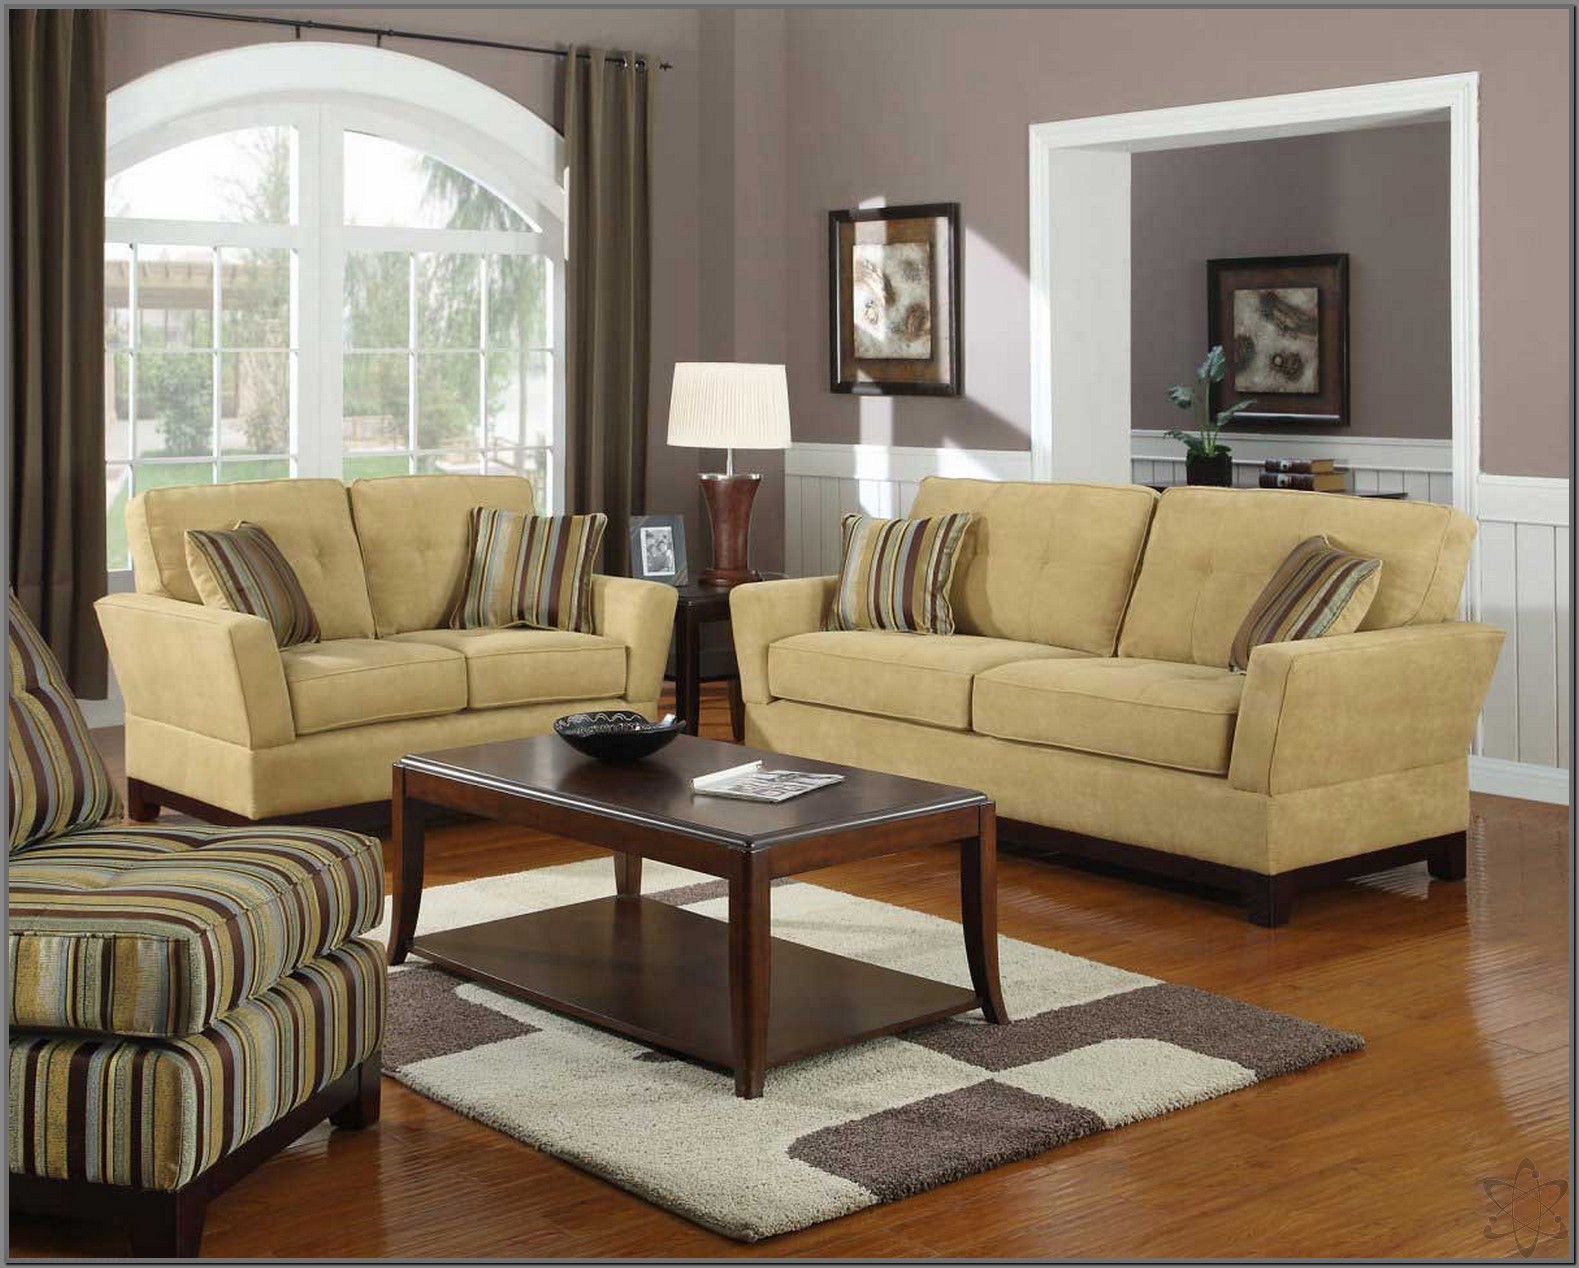 35 Model Gambar Sofa Minimalis Modern Untuk Ruang Tamu Yang Cantik